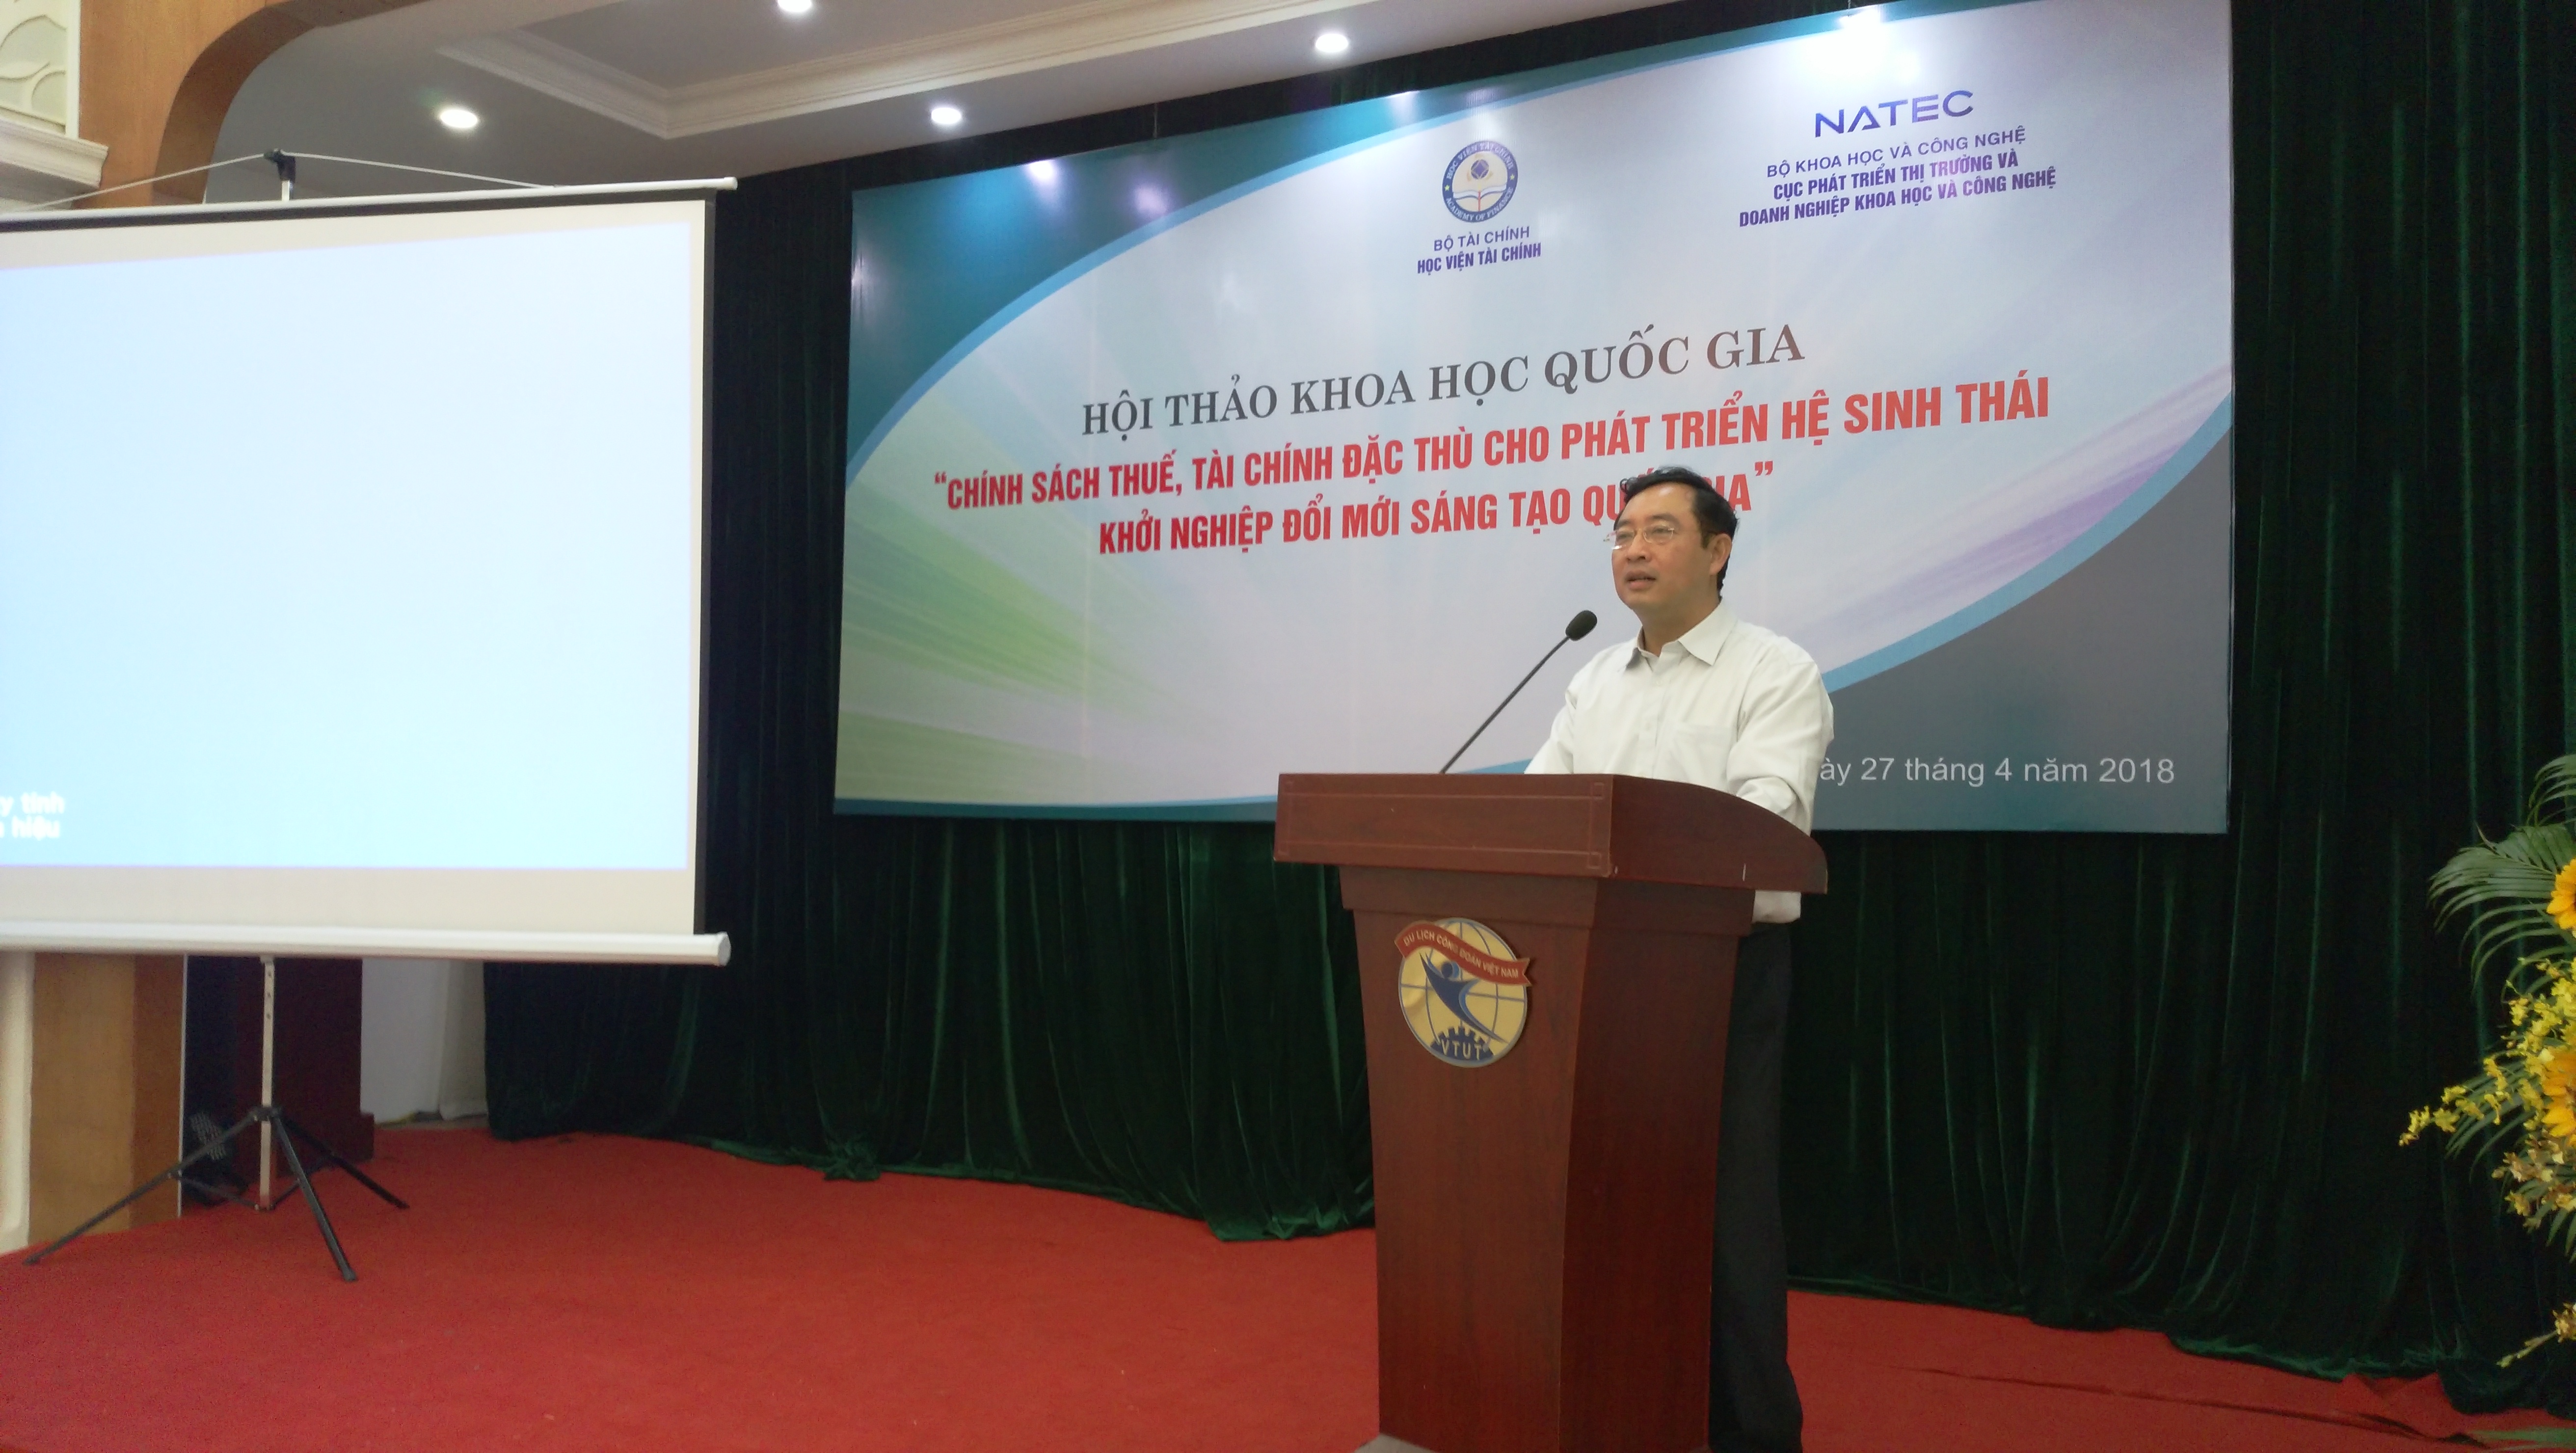 TS. Phạm Hồng Quất, Cục trưởng Phát triển Thị trường và Doanh nghiệp KHCN phát biểu tại hội thảo. Ảnh: KHPT 